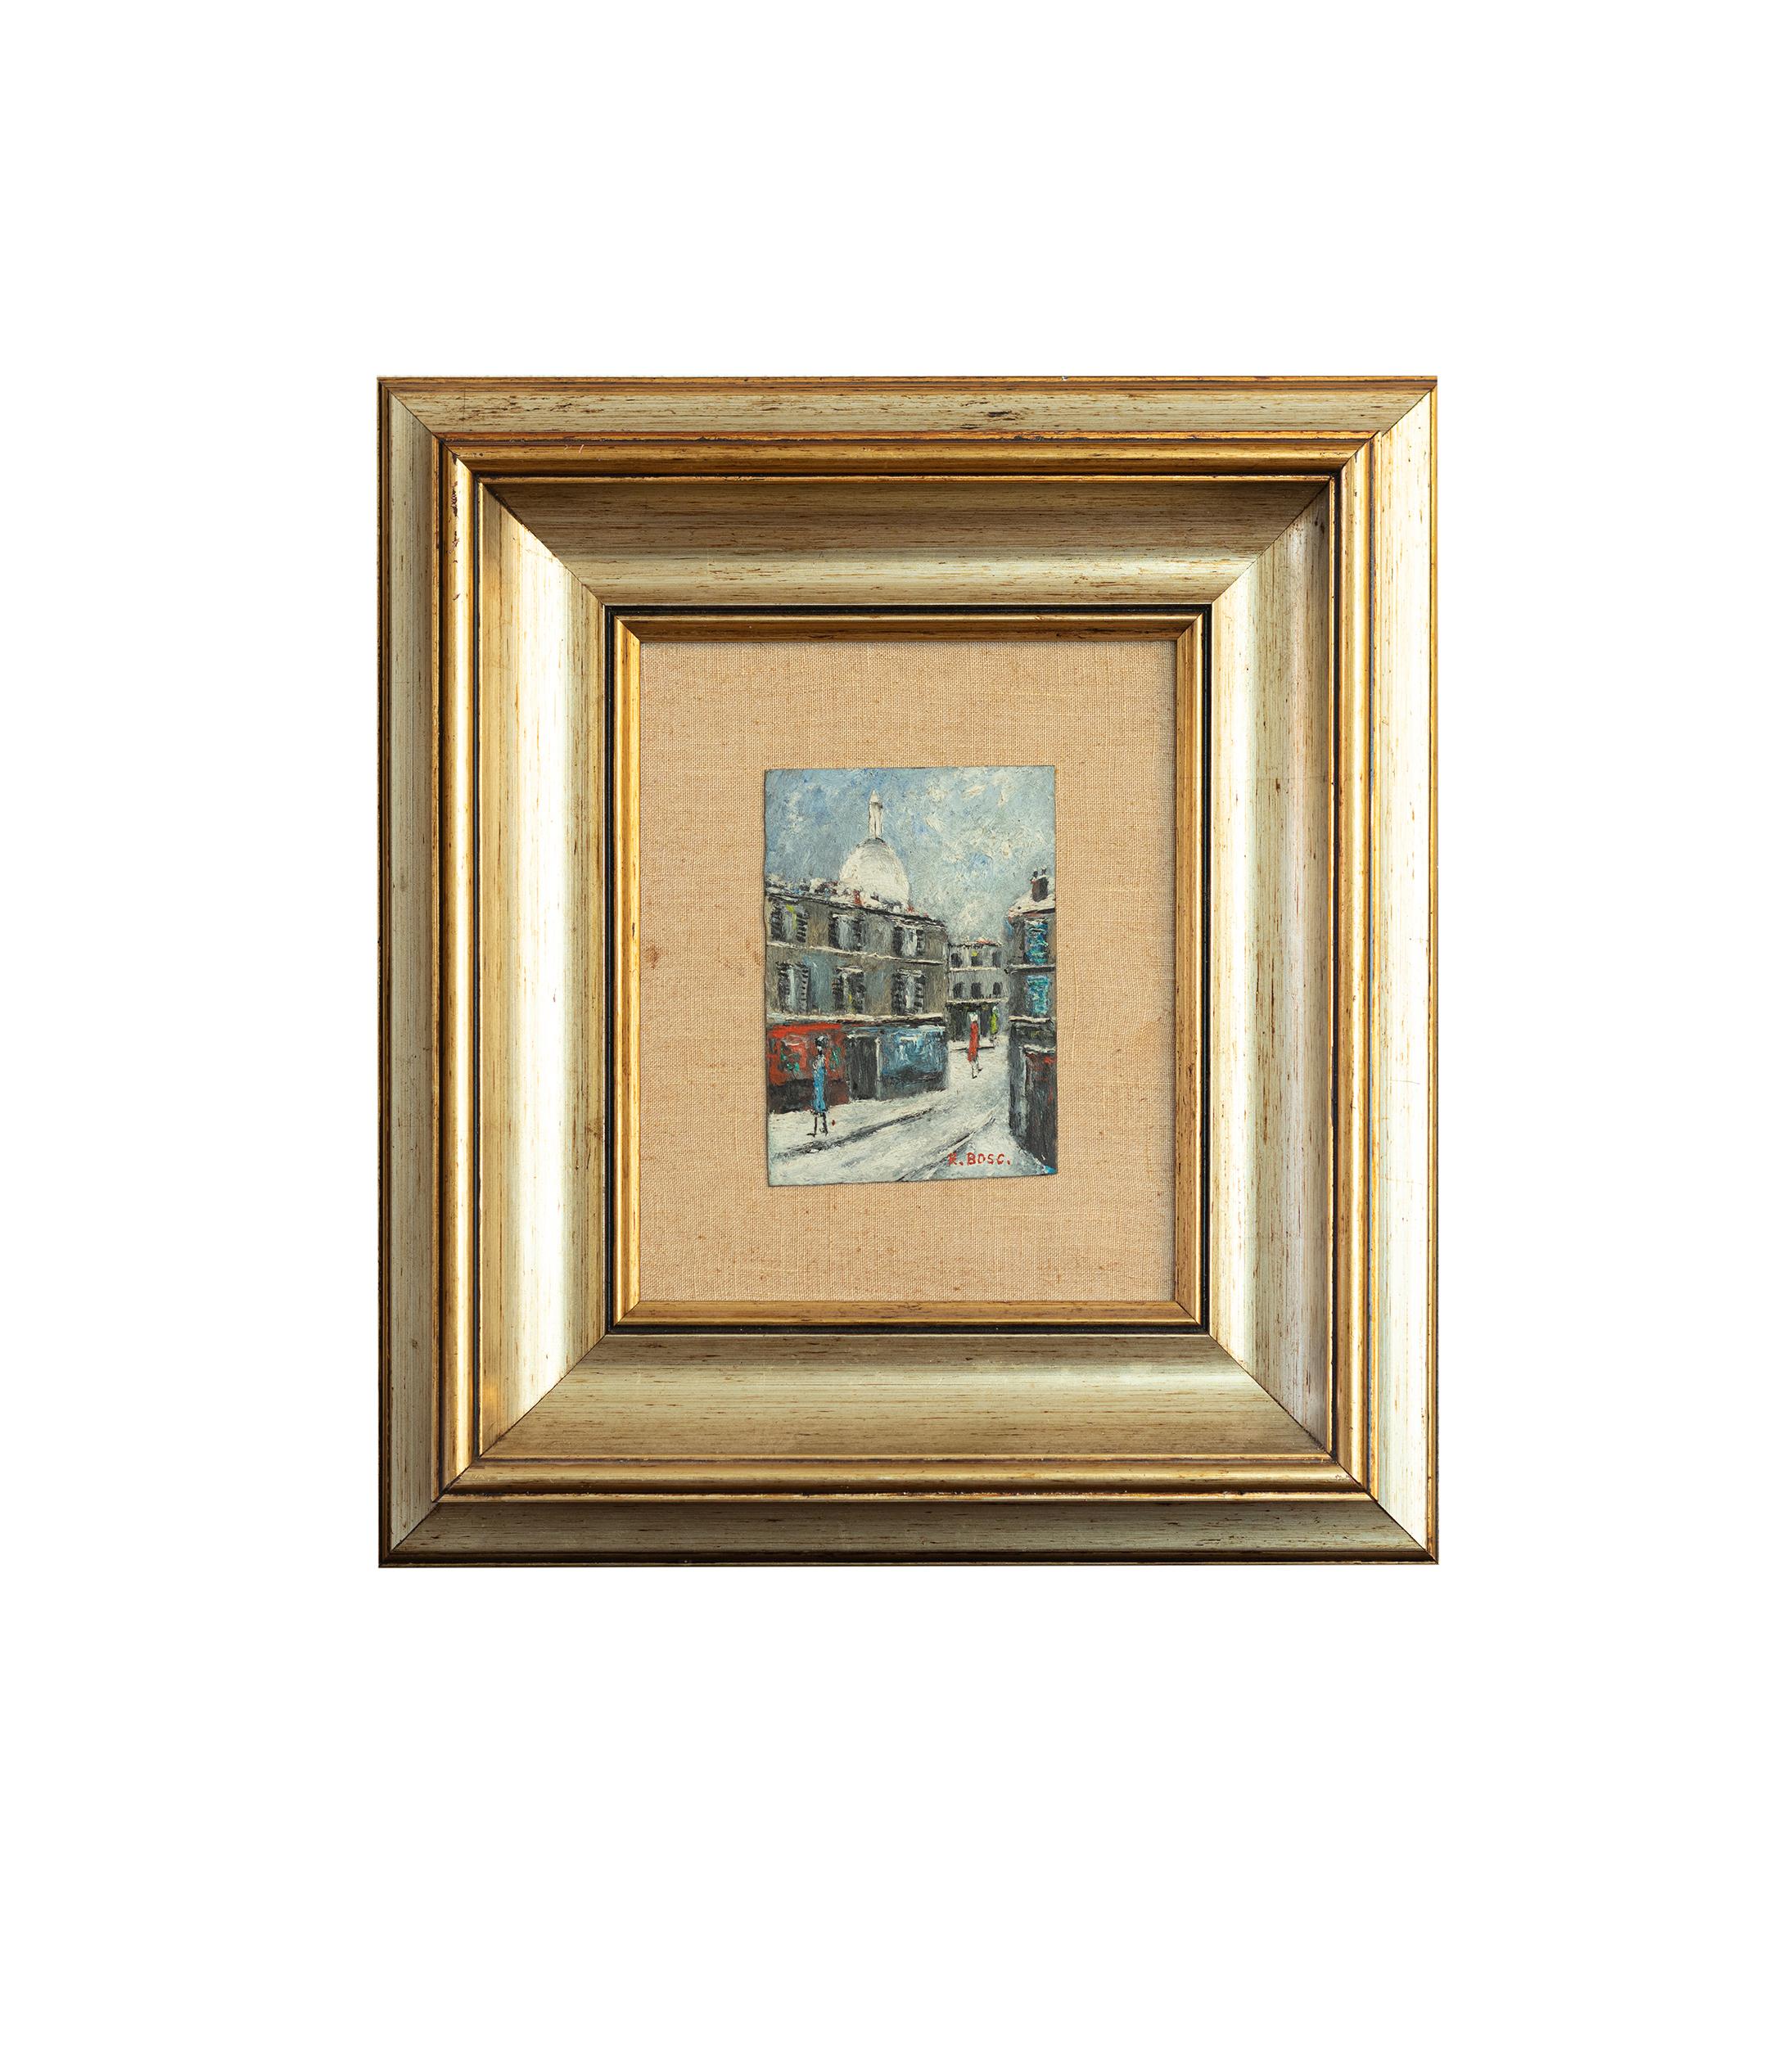 Ein beeindruckendes postimpressionistisches französisches Gemälde, das eine düstere Szene auf dem Montmartre zeigt, mit der ikonischen weißen Kuppel der Sacre Coeur in der Ferne. Das Gemälde zeigt zwei Franzosen, die durch schneebedeckte